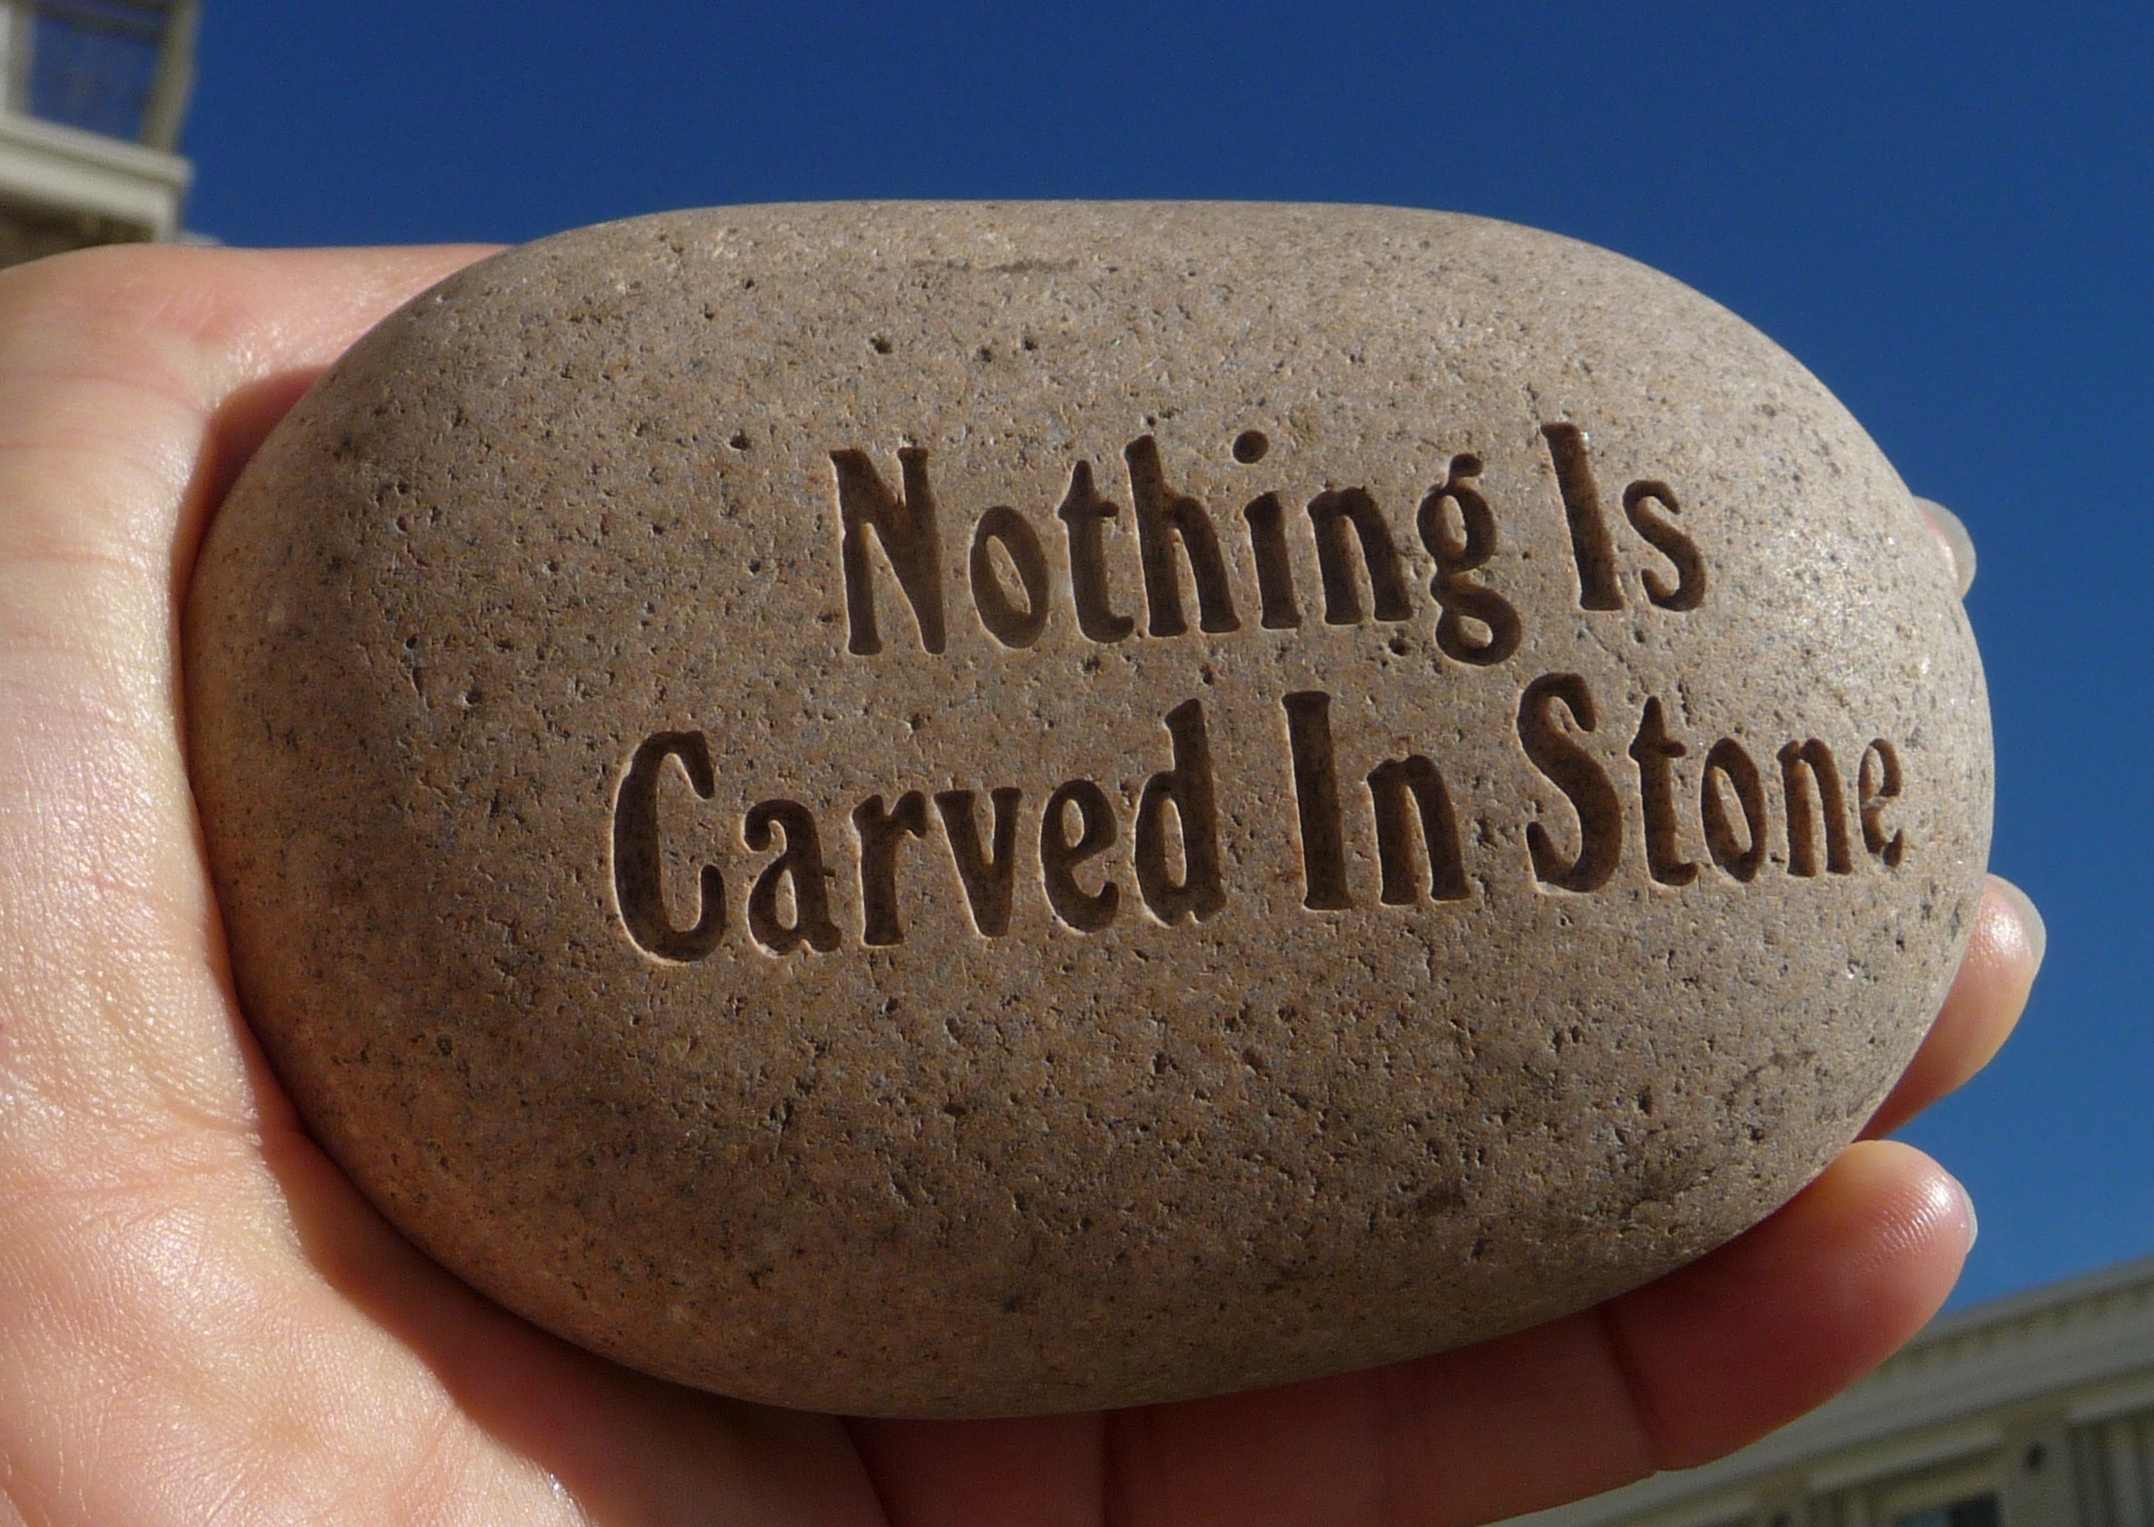 Carved in stone. Carved in Stone, 1995. Thumb up Carved in Stone. Carved in Stone photo.